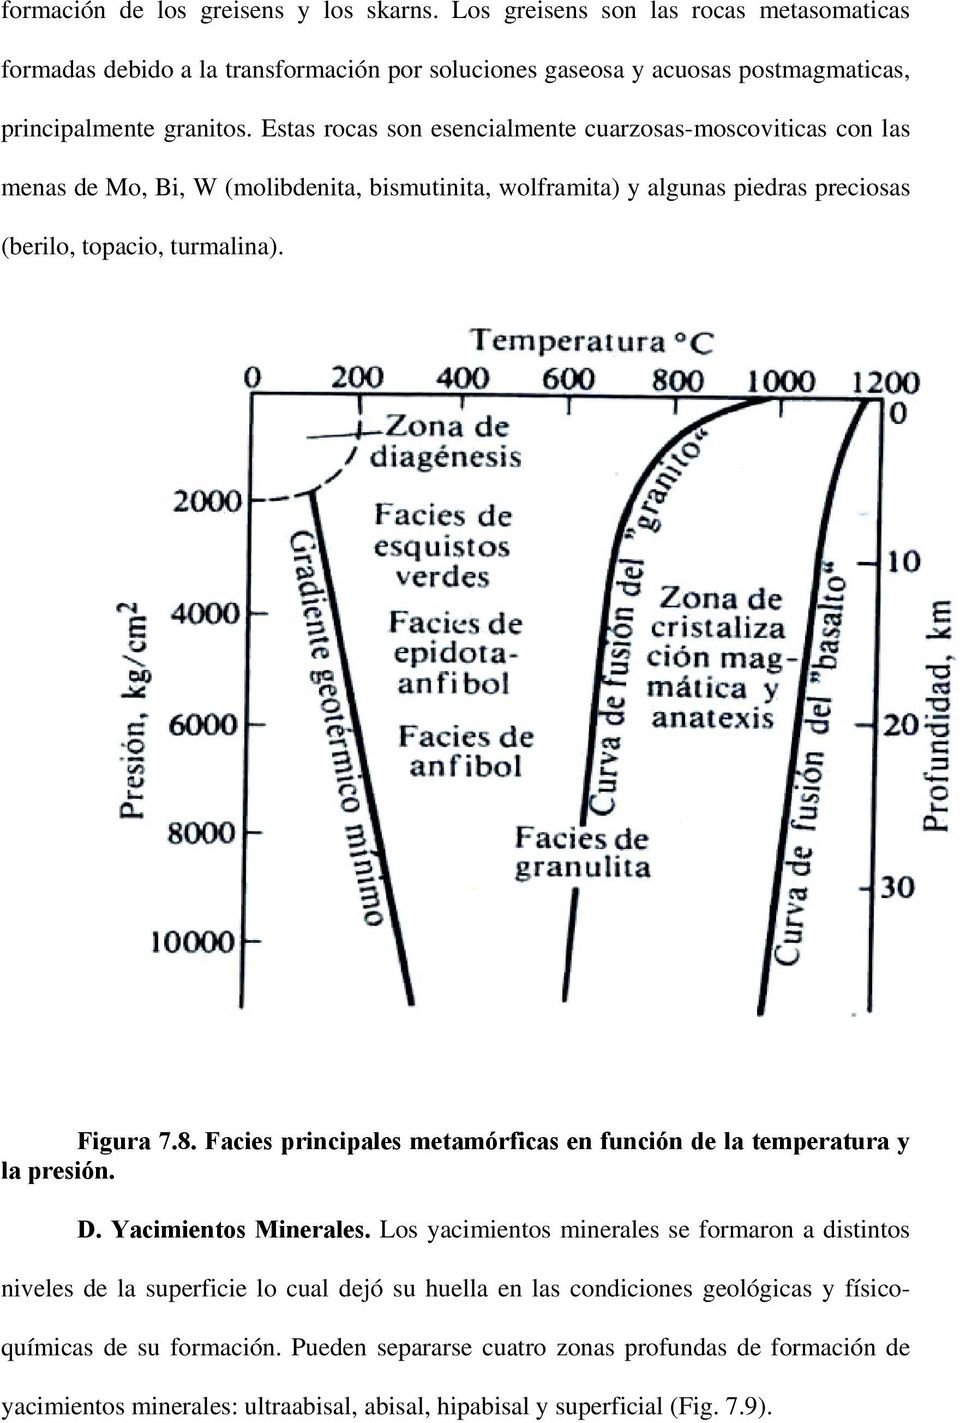 Facies principales metamórficas en función de la temperatura y la presión. D. Yacimientos Minerales.